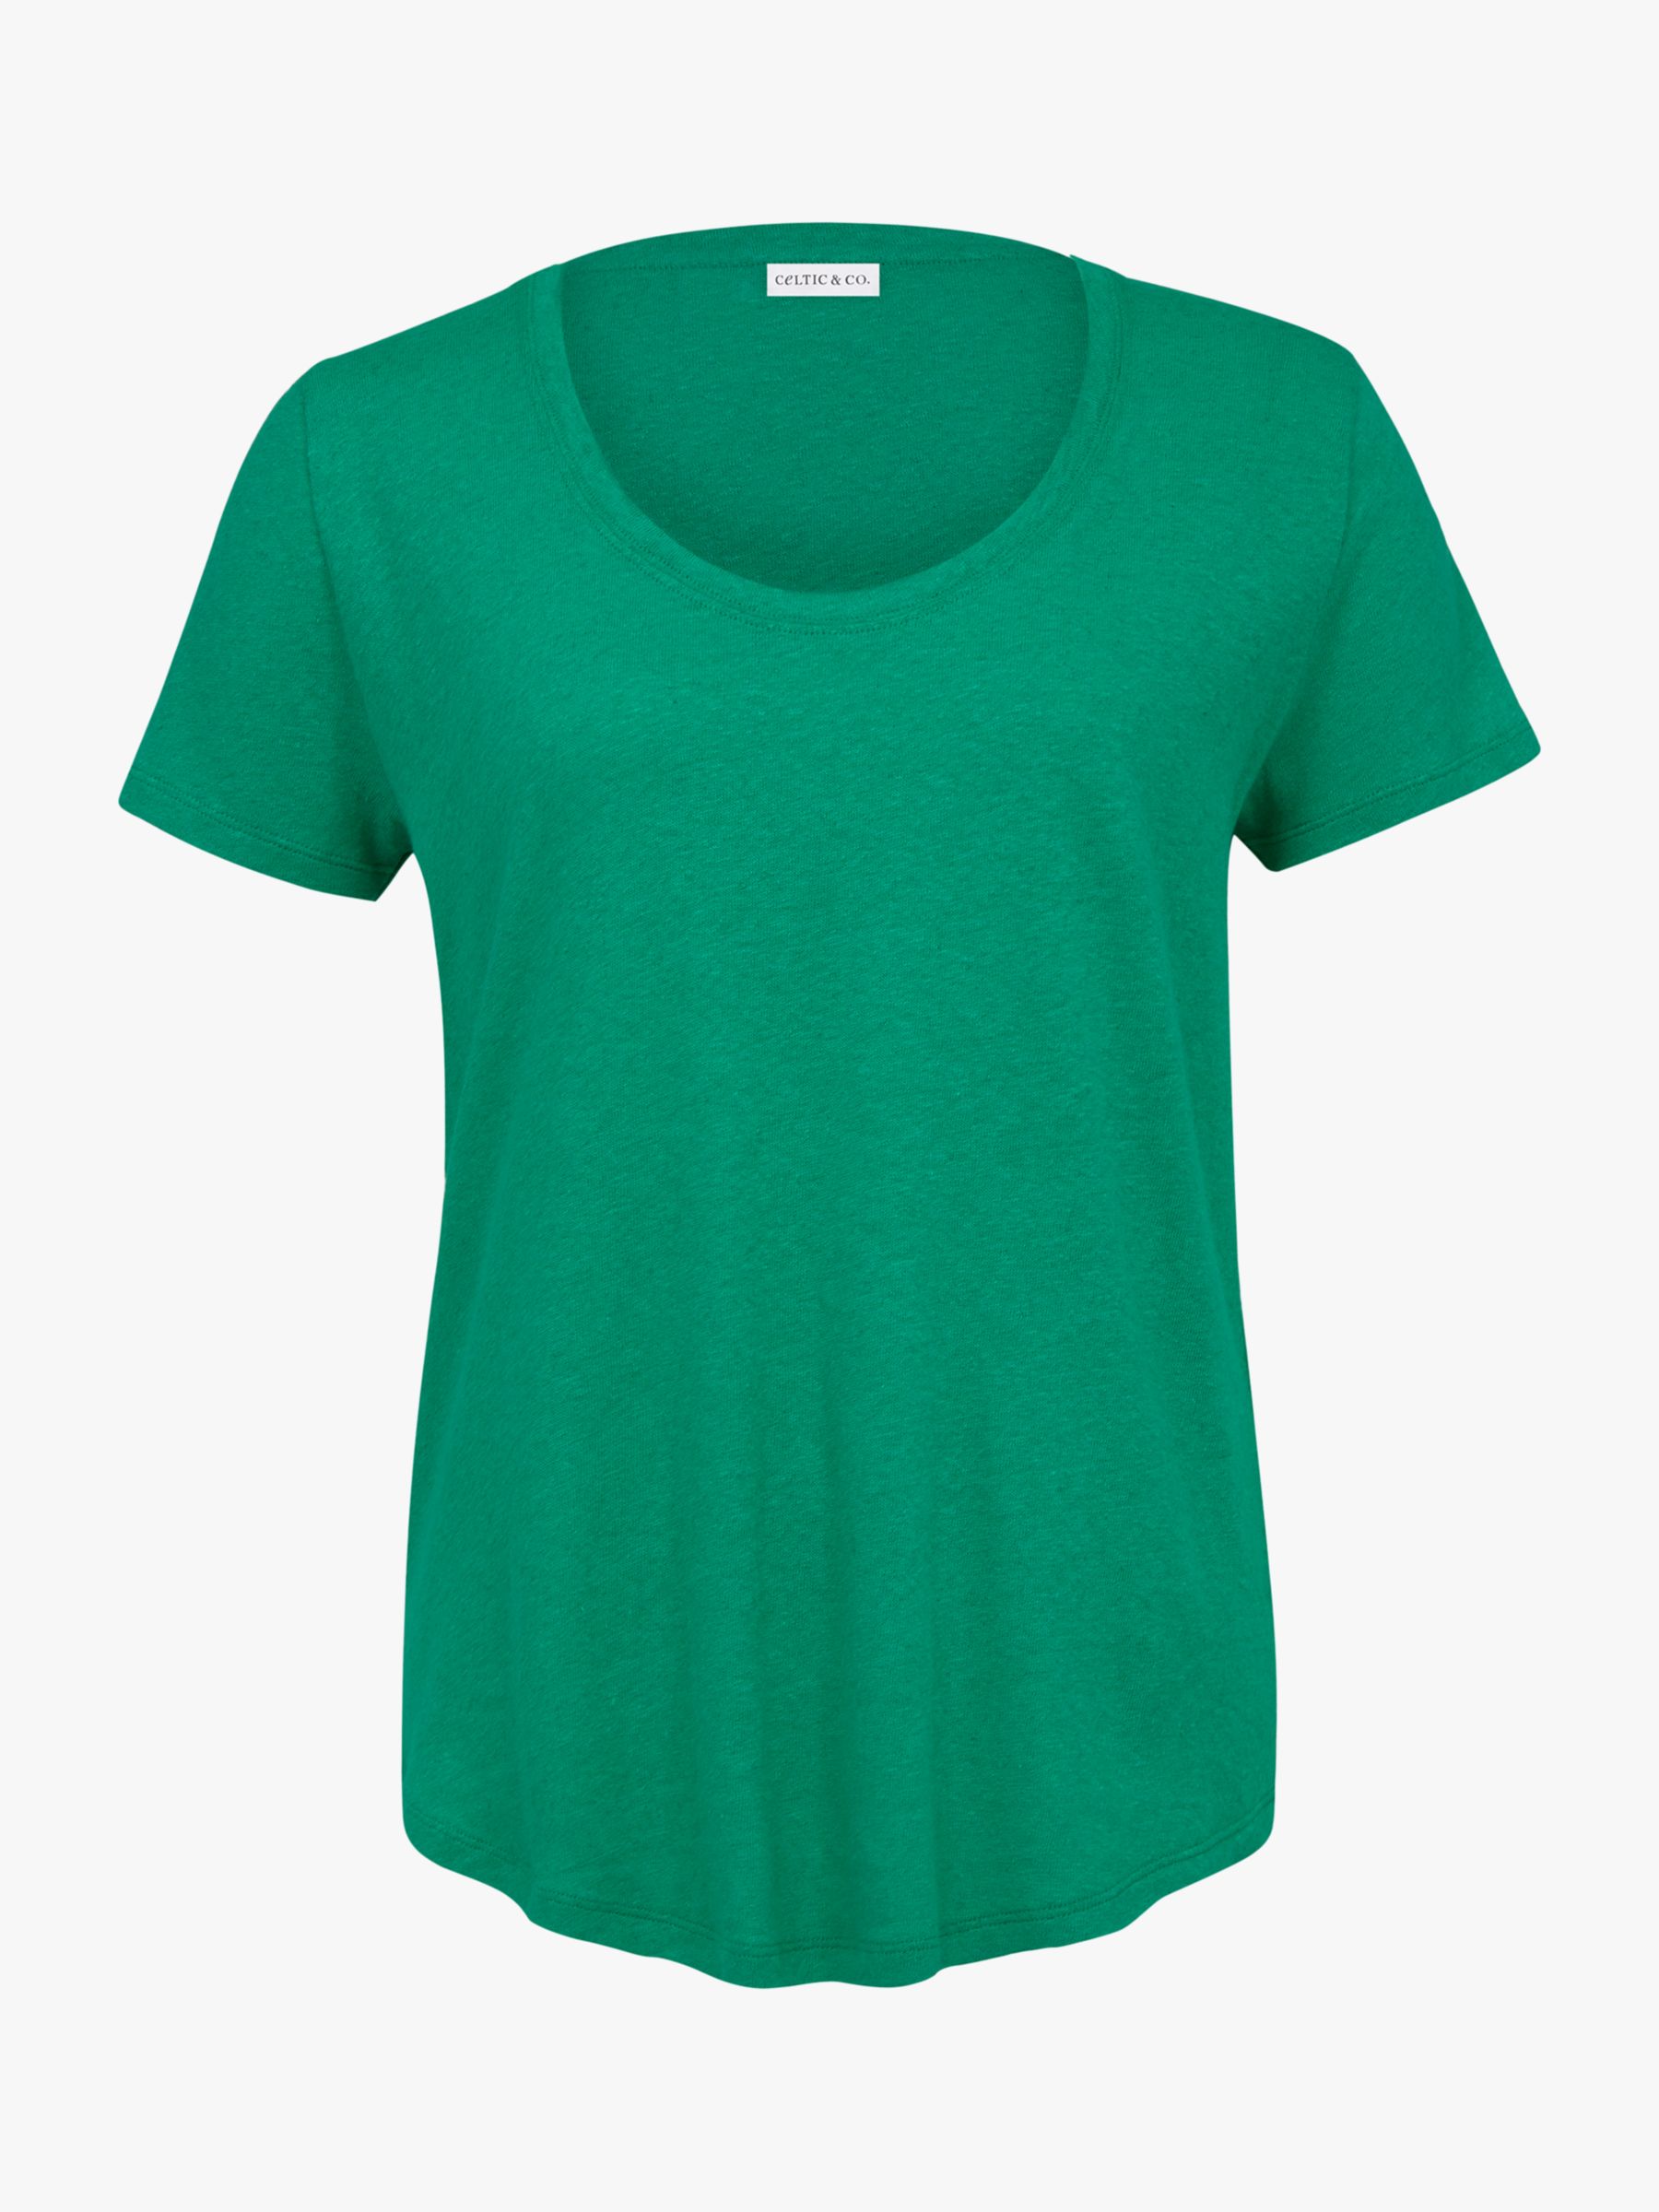 Buy Celtic & Co. Linen Blend Scoop Neck T-Shirt, Emerald Online at johnlewis.com